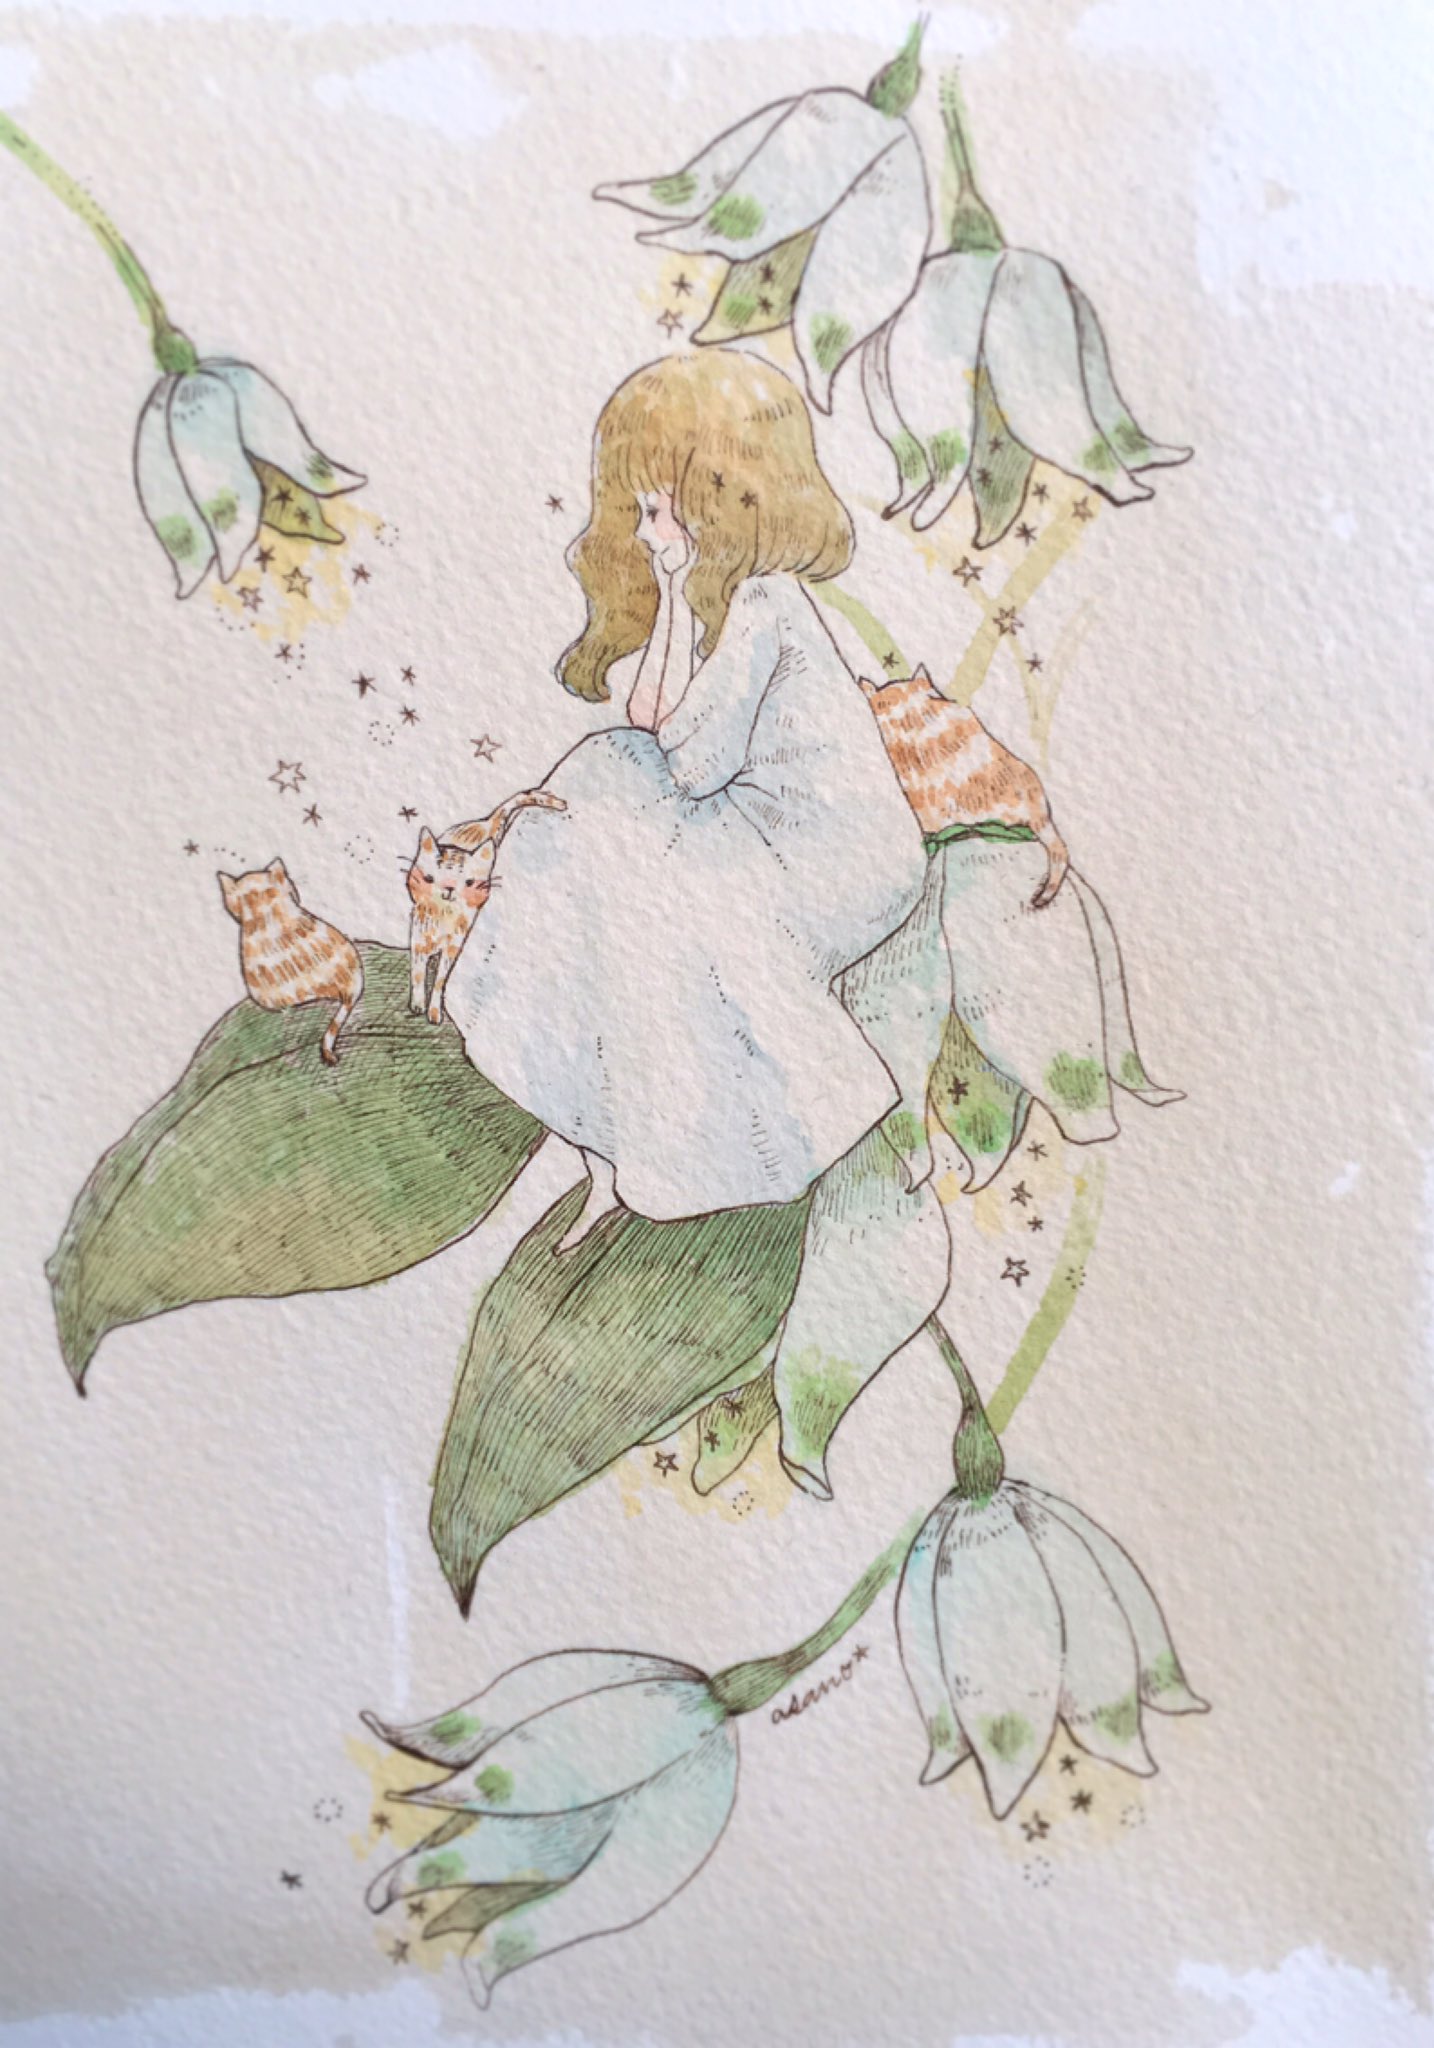 吉田麻乃 スノーフレーク ほんのり色付しました こんな形のお花って中に何か隠れてそうですき 鈴蘭とか鬼灯とか 水彩画 水彩 女の子 イラスト 猫 ネコ ねこ ペン画 スノーフレーク 花 T Co Ko6qiiy6lv Twitter